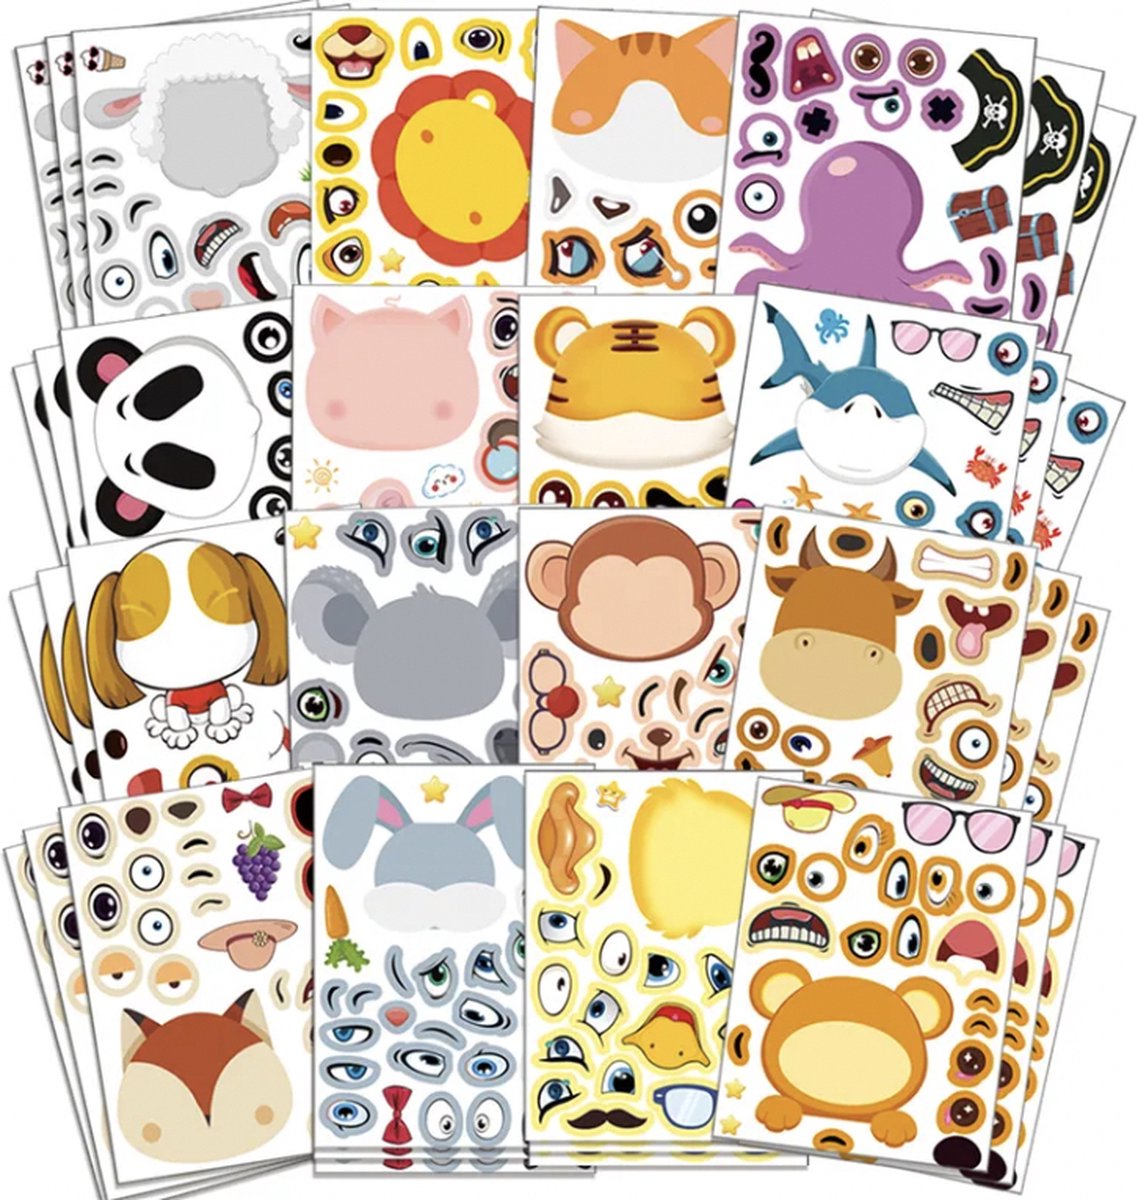 Inktvis Knutselen & Tekenen met Dieren Stickers - Maak een Dieren Gezicht - Sticker Spel - 12 stuks - Dieren Stickers - Tekenen & Knutselen - Creatief Speelgoed - Puzzel Stickers - Zelf een Gezicht van een Dier Maken met Stickers - Emotie Stickers